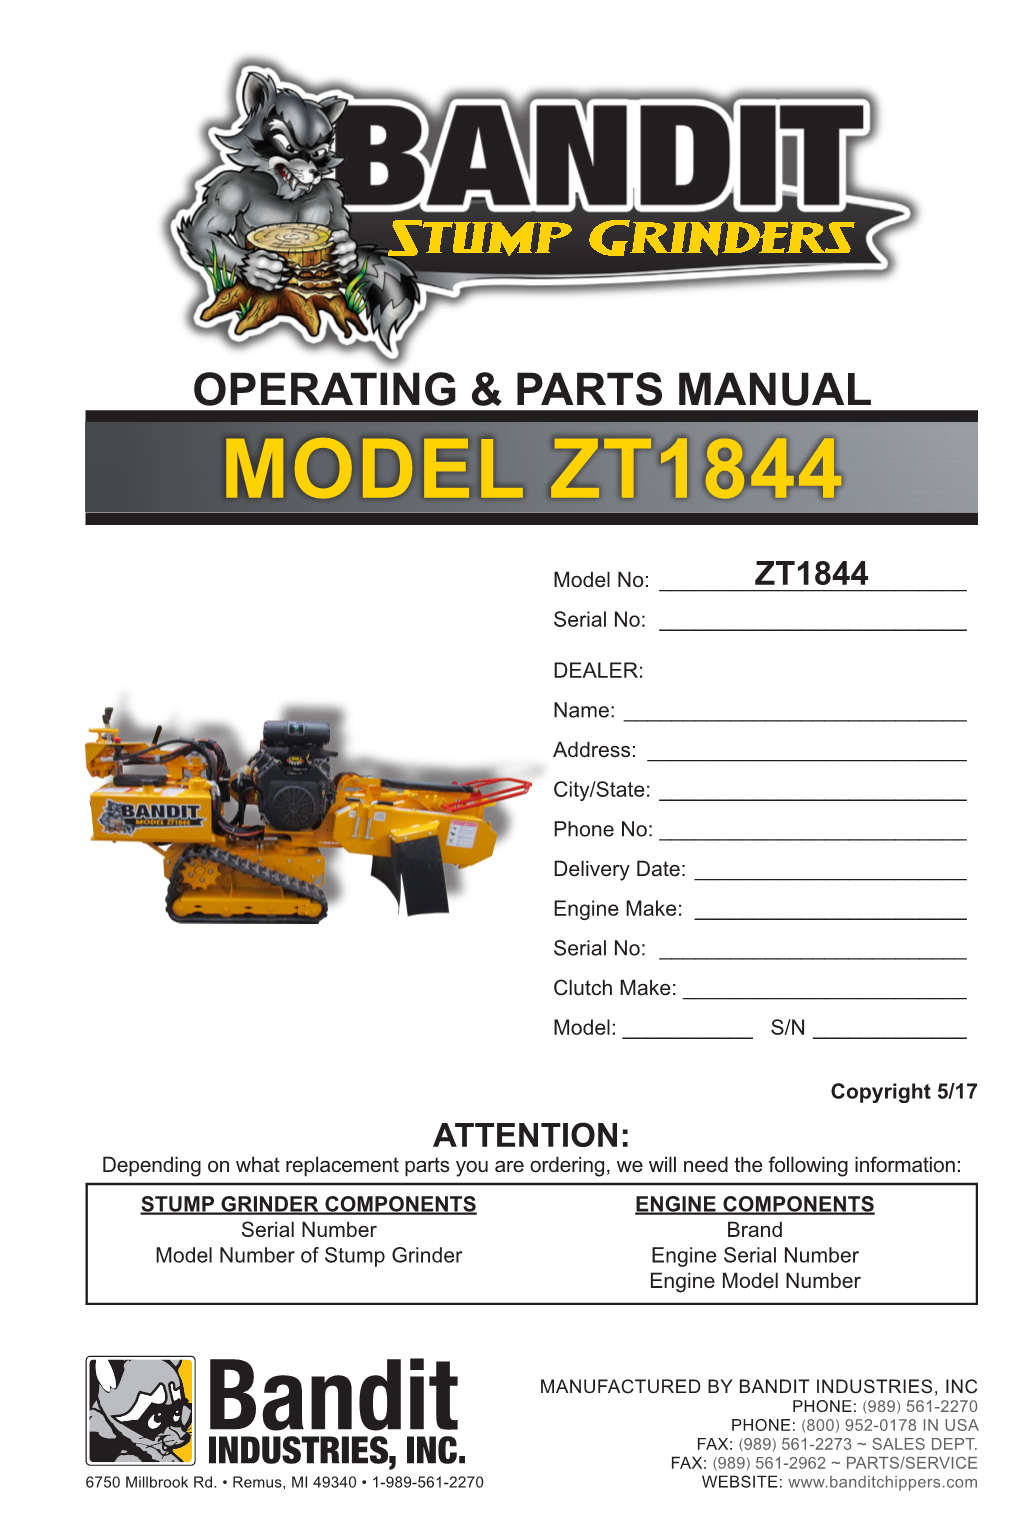 Operating & Parts Manual